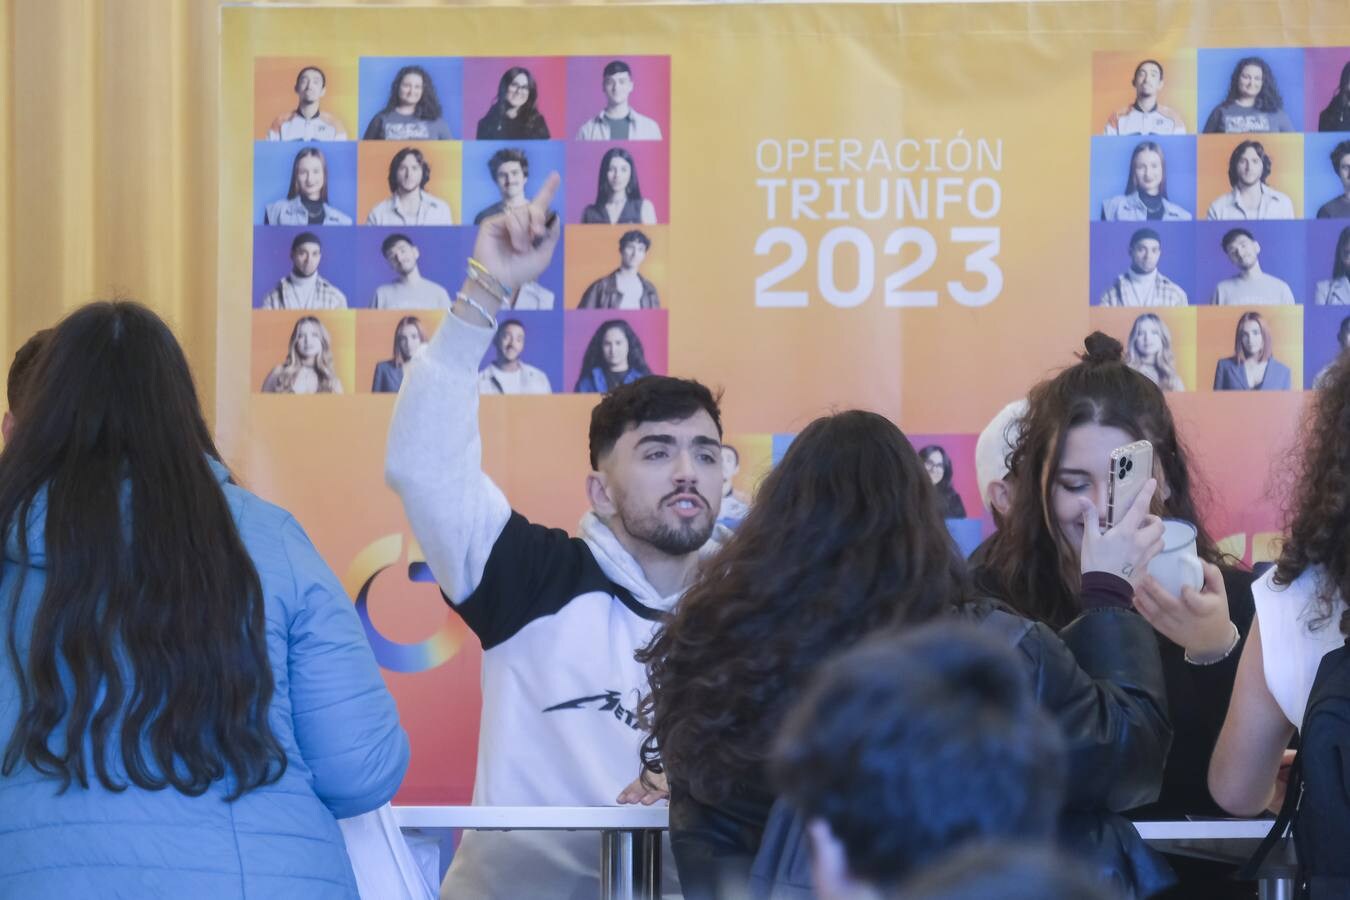 Los concursantes de OT 2023 firmarán este sábado discos en Torre Sevilla, Ocio y cultura